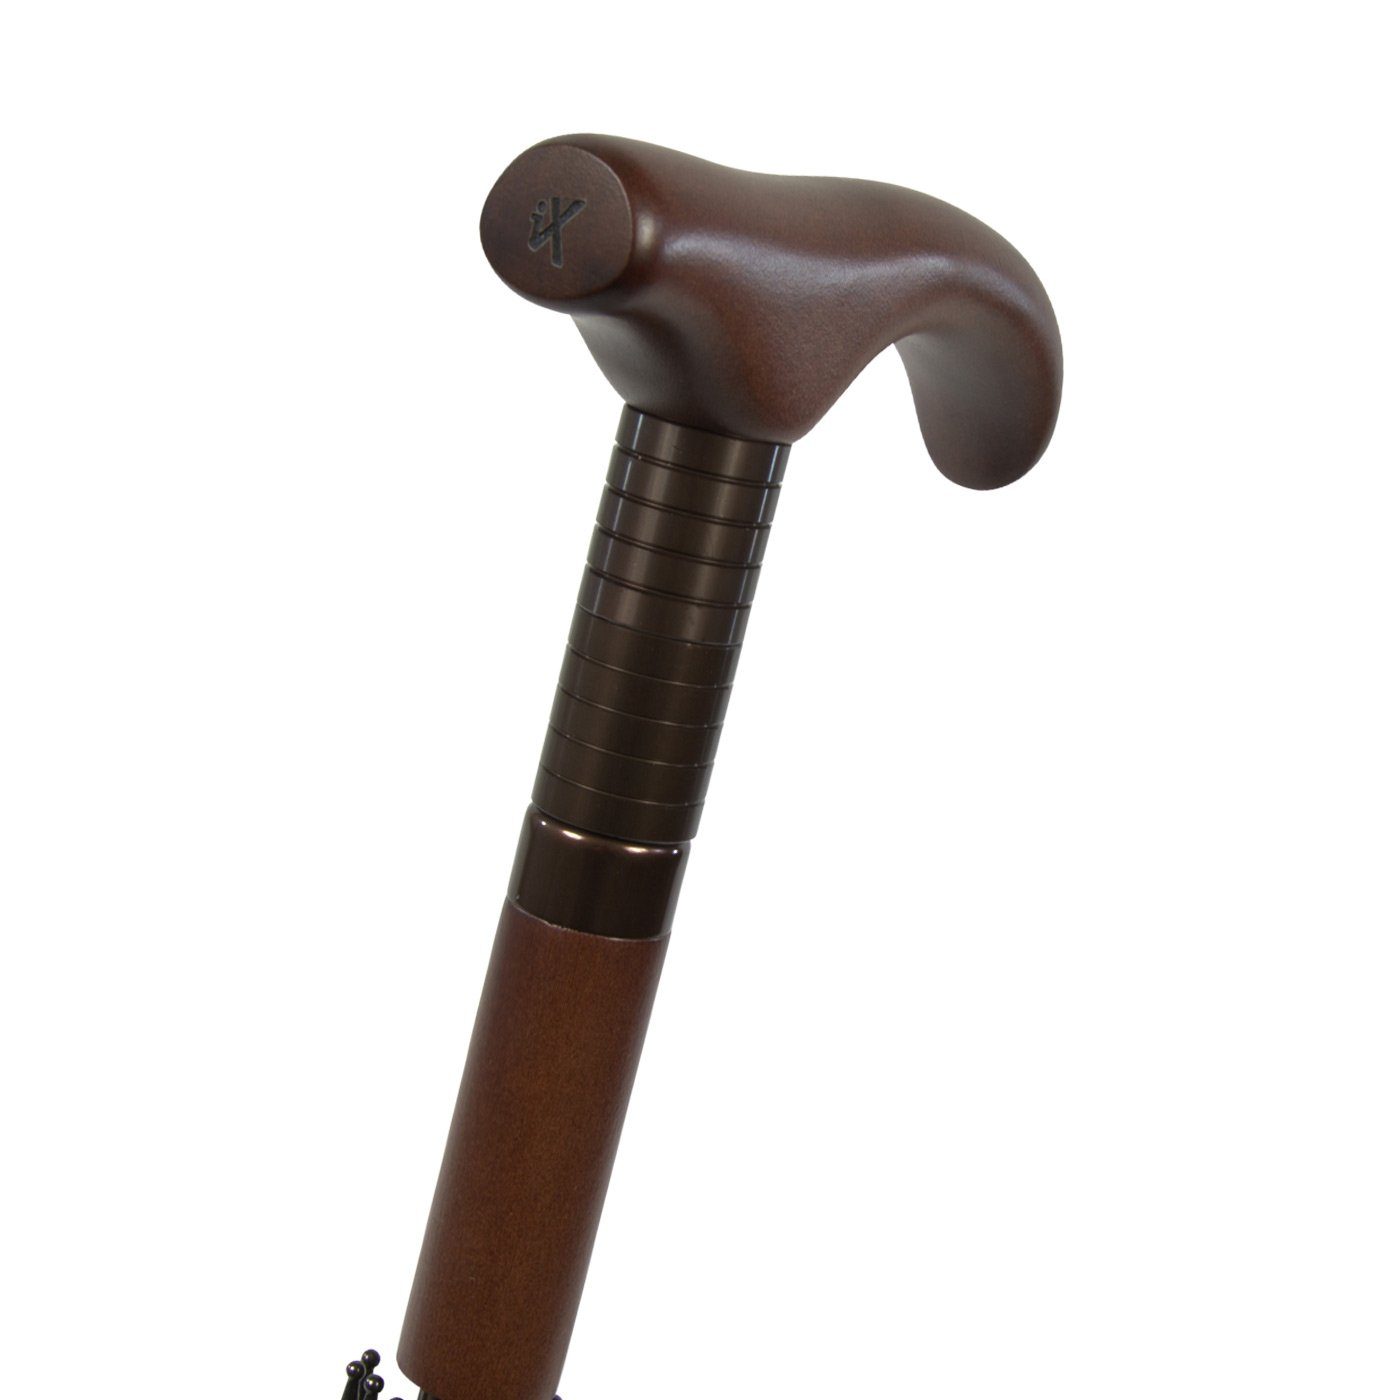 stabil, iX-brella Langregenschirm Holzgriff höhenverstellbar sehr kariert klassisch Stützschirm beige